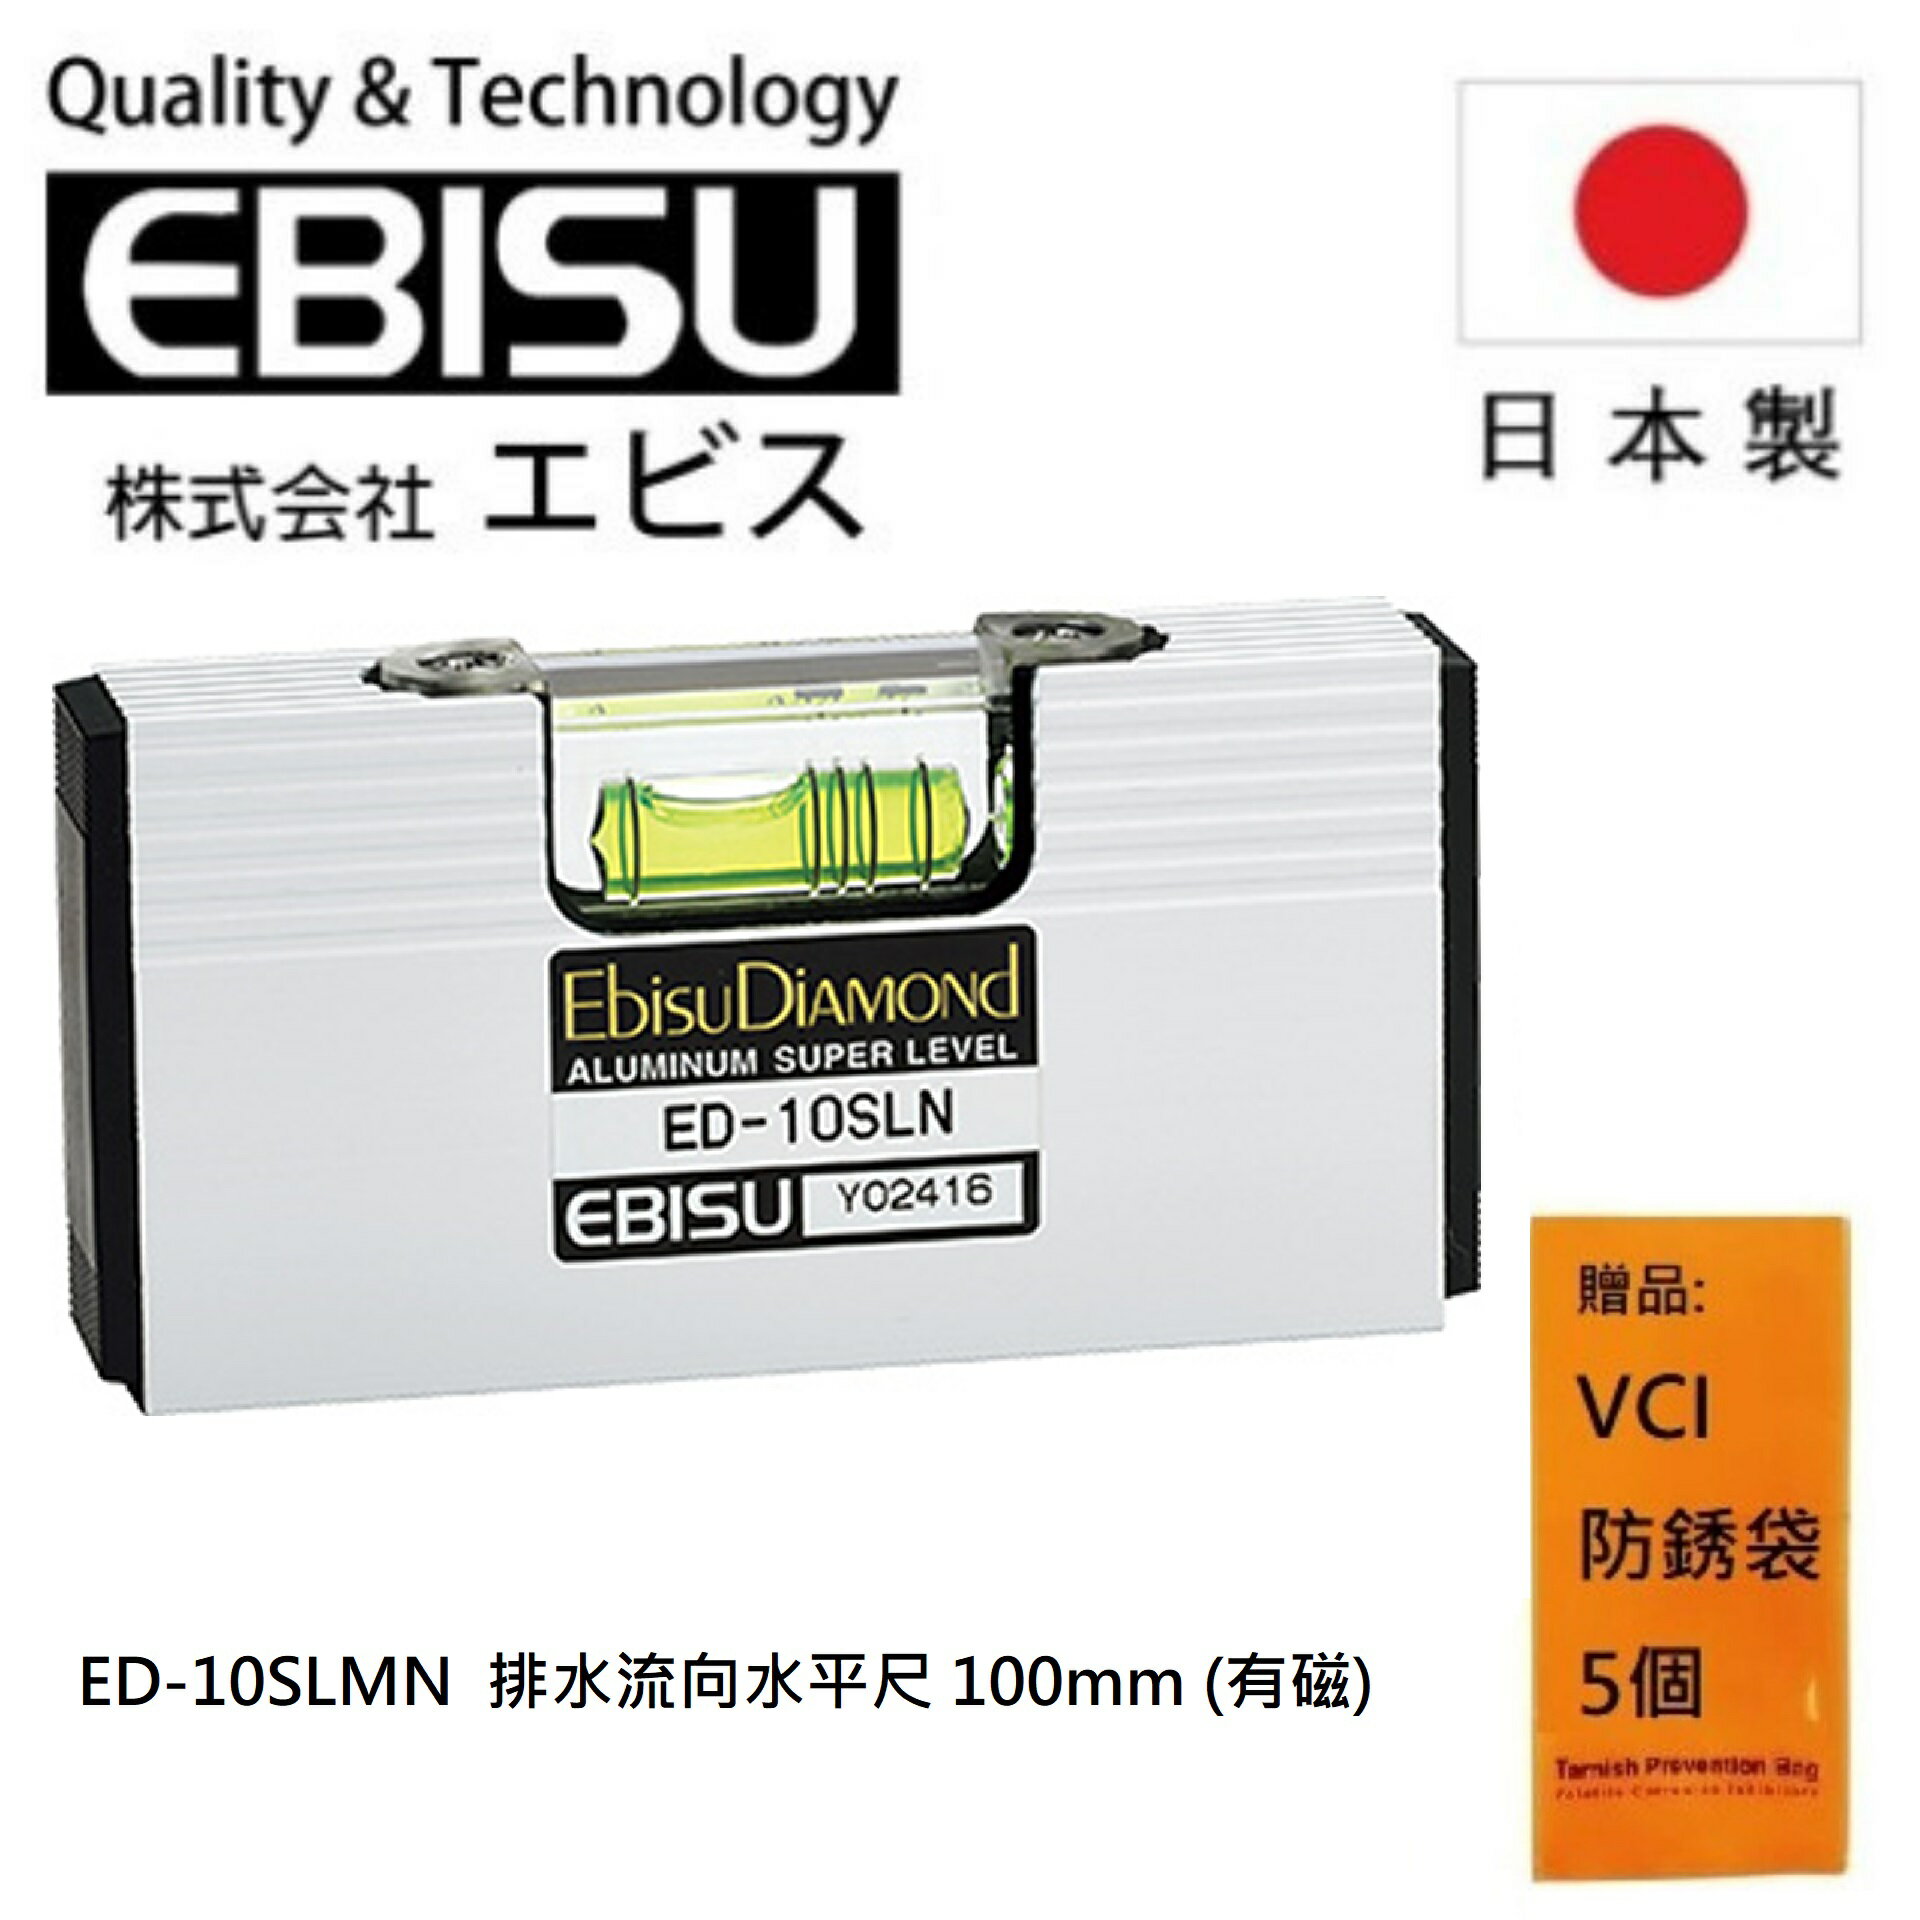 【日本EBISU】 排水流向水平尺 100mm (有磁) ED-10SLMN 一個氣泡管可測量3個梯度和水平/垂直。